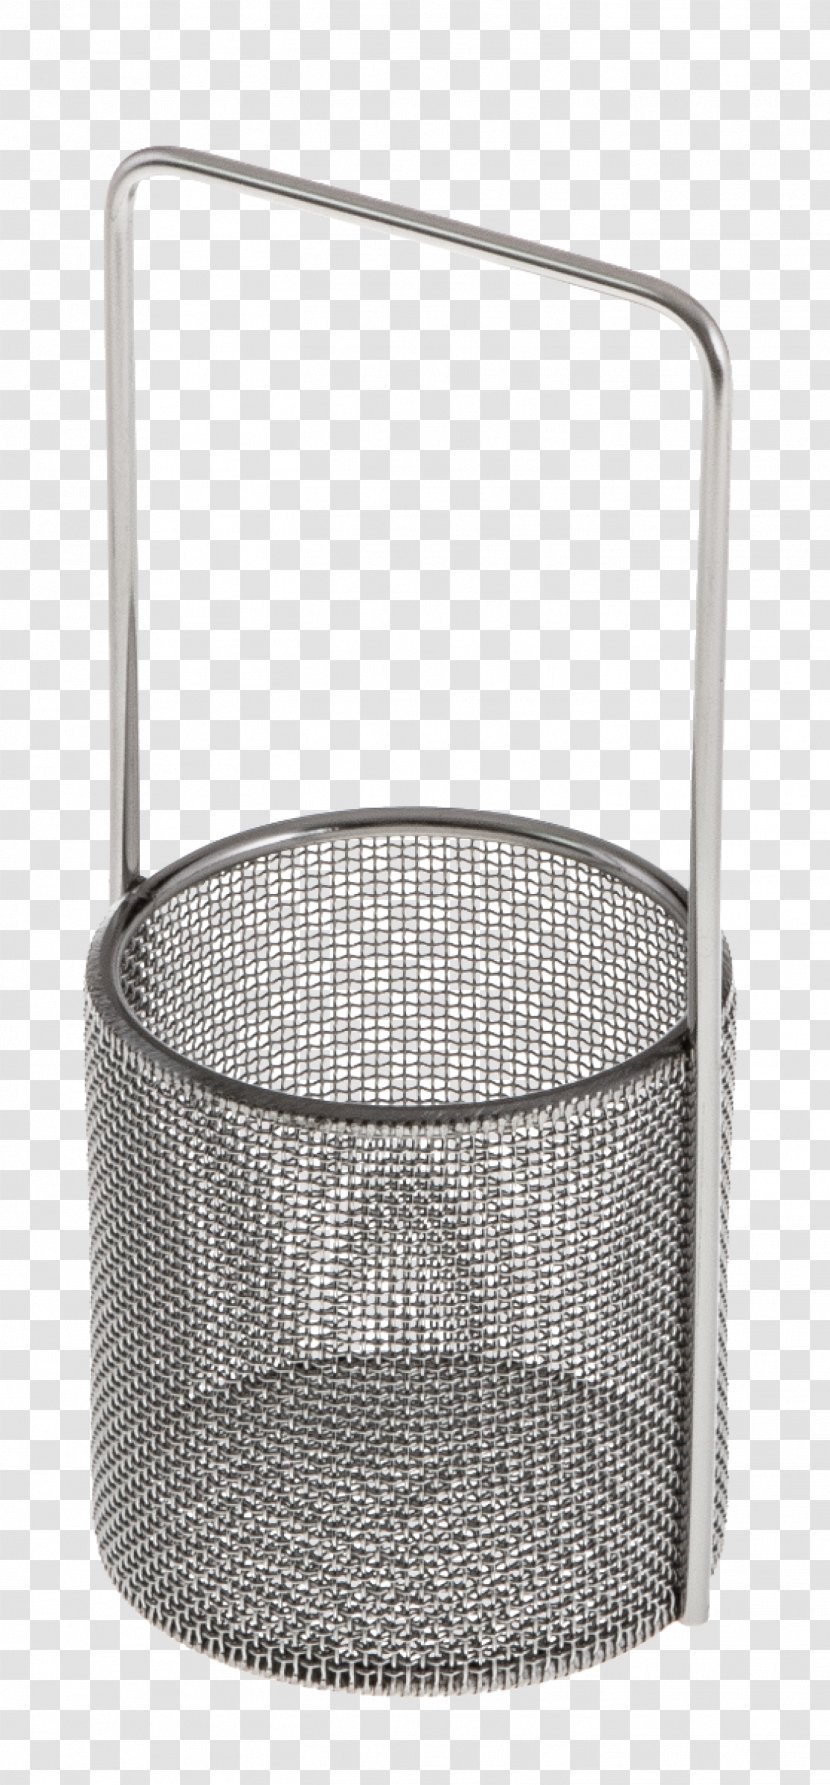 Product Design Angle Basket - Mesh - Shop Wide Transparent PNG